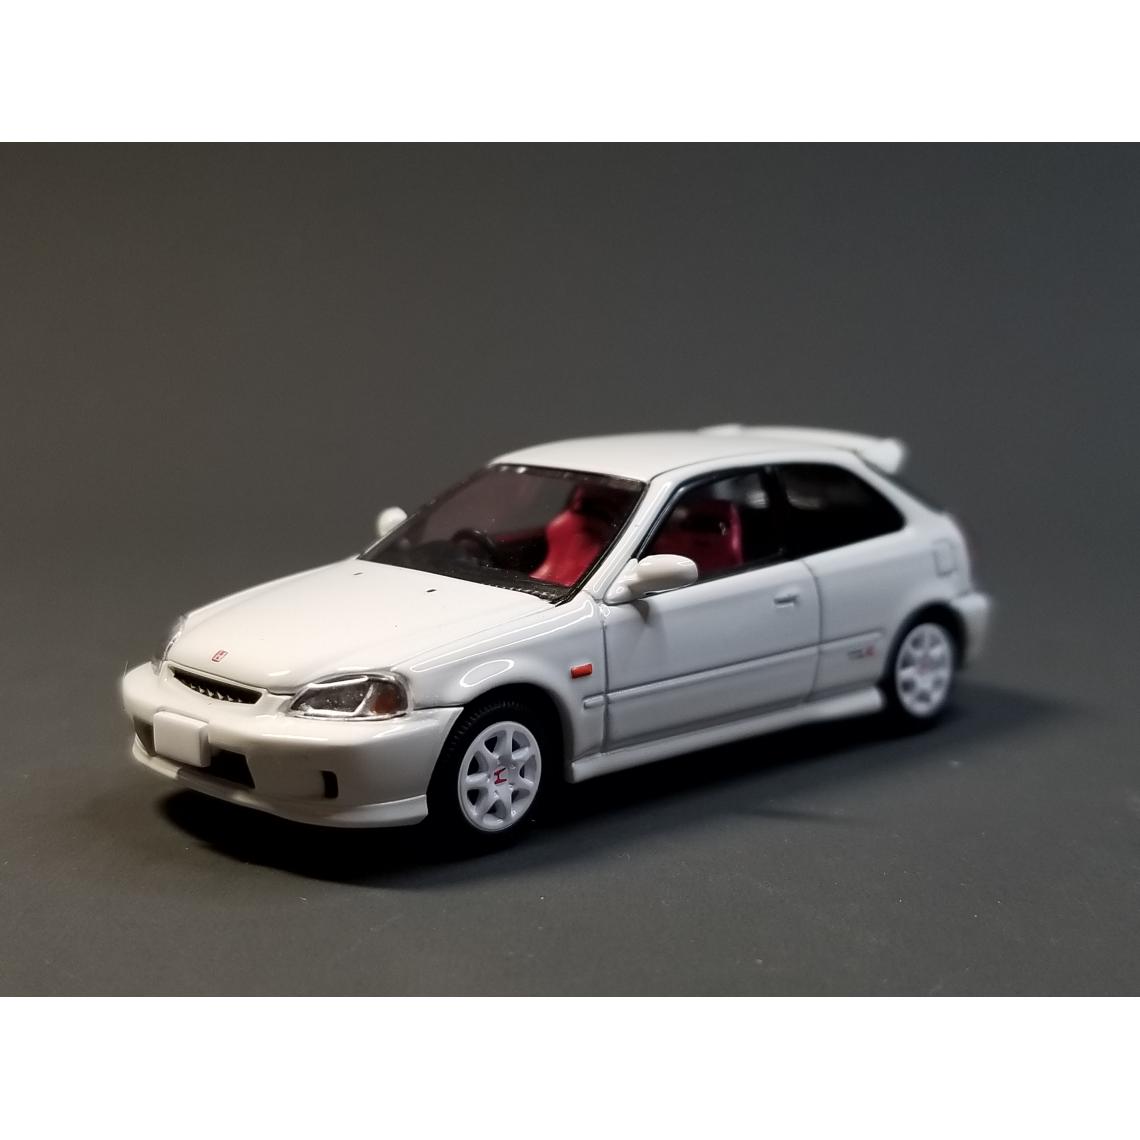 Universal - 1/64 Honda Civic Type R Modèle de moulage sous pression Automobile Collection Co., Ltd. | Voiture jouet moulée sous pression(blanche) - Voitures